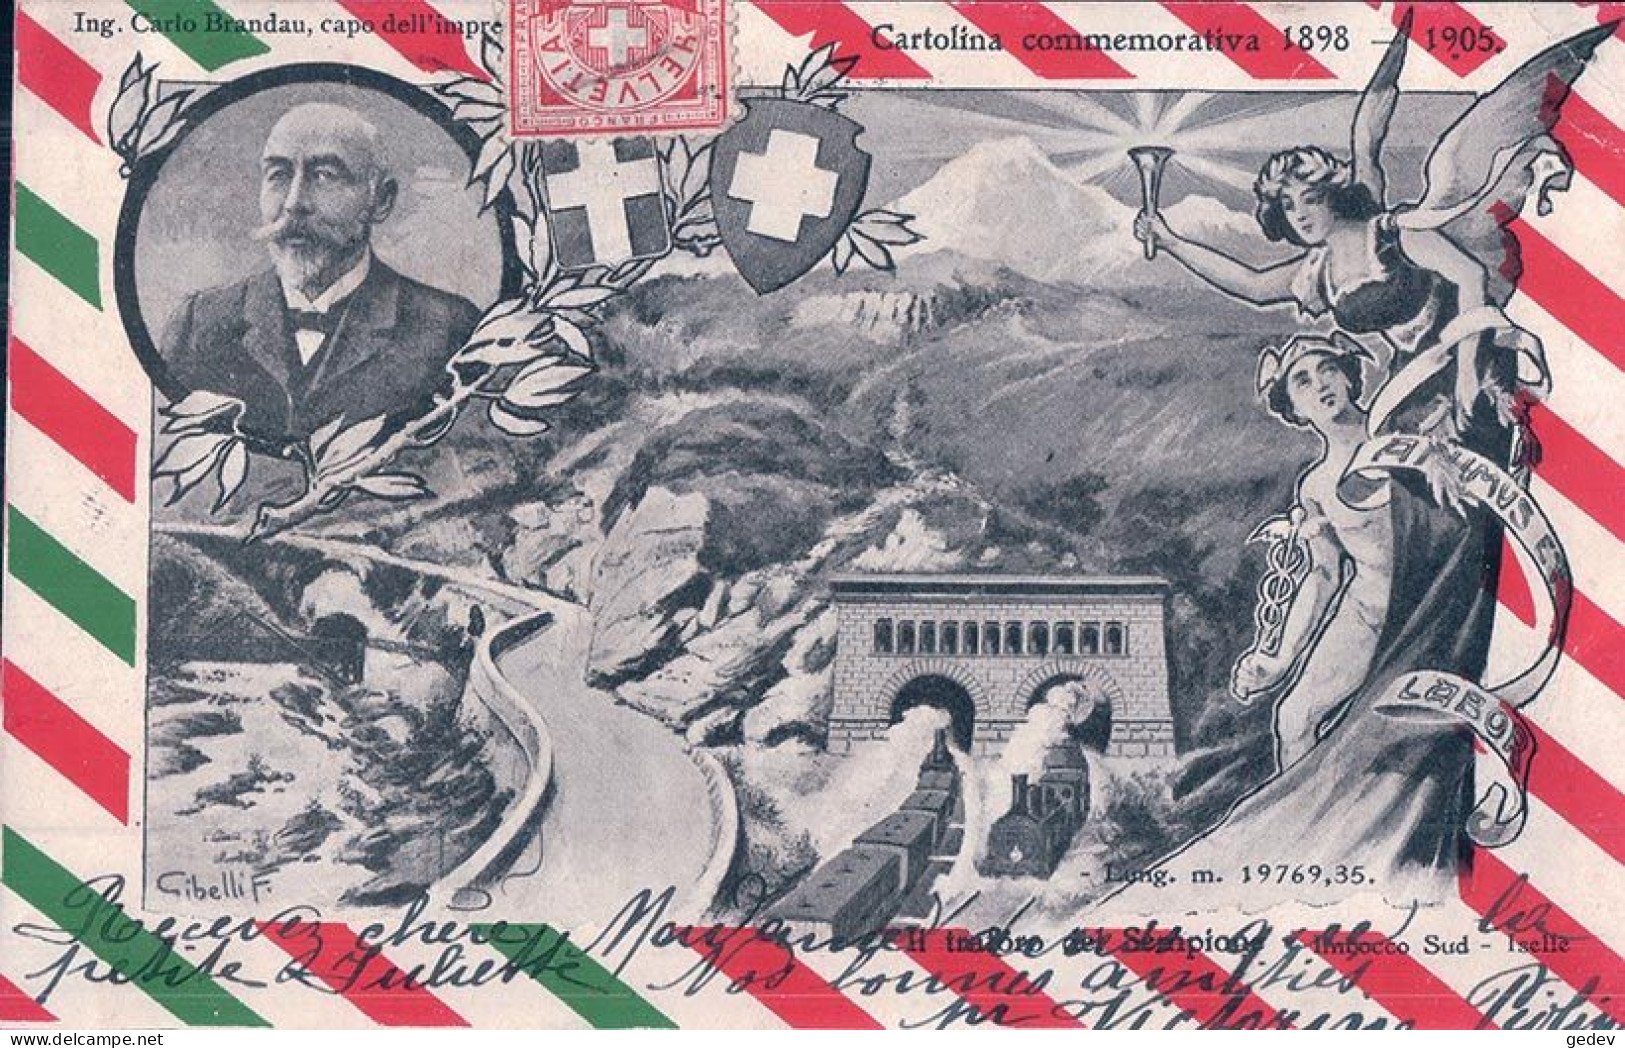 Cartolina Commemorativa 1898 - 1905, L Traforo Del Sempione, Imbocco Sud, Iselle, Illustrateur Gibelli F. (11.4.1905) - Kunstbauten